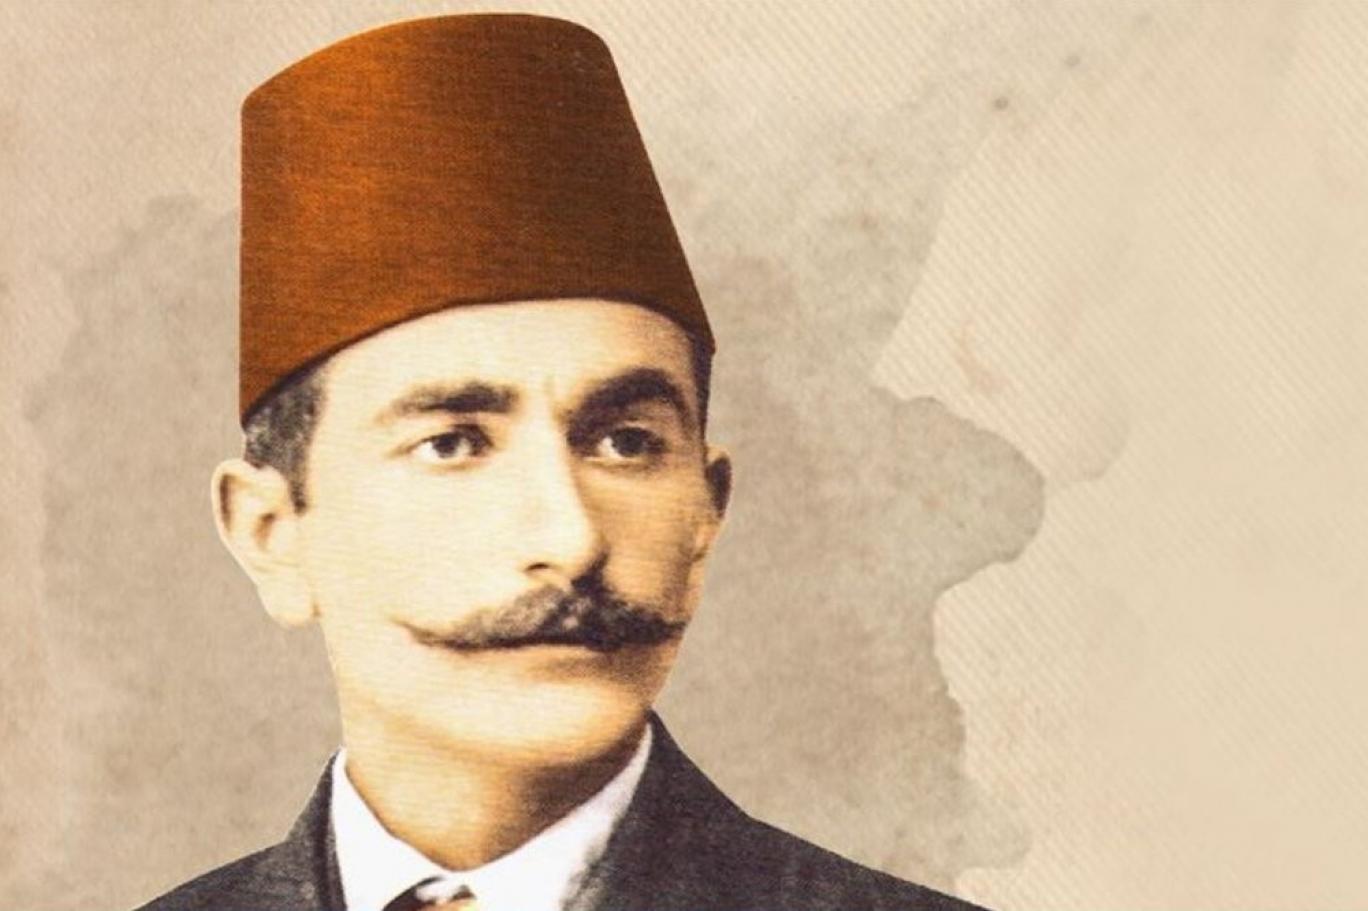 Bakü Fatihi Nuri (Killigil) Paşa'nın girişimciliğine ne oldu? (1) | Independent Türkçe